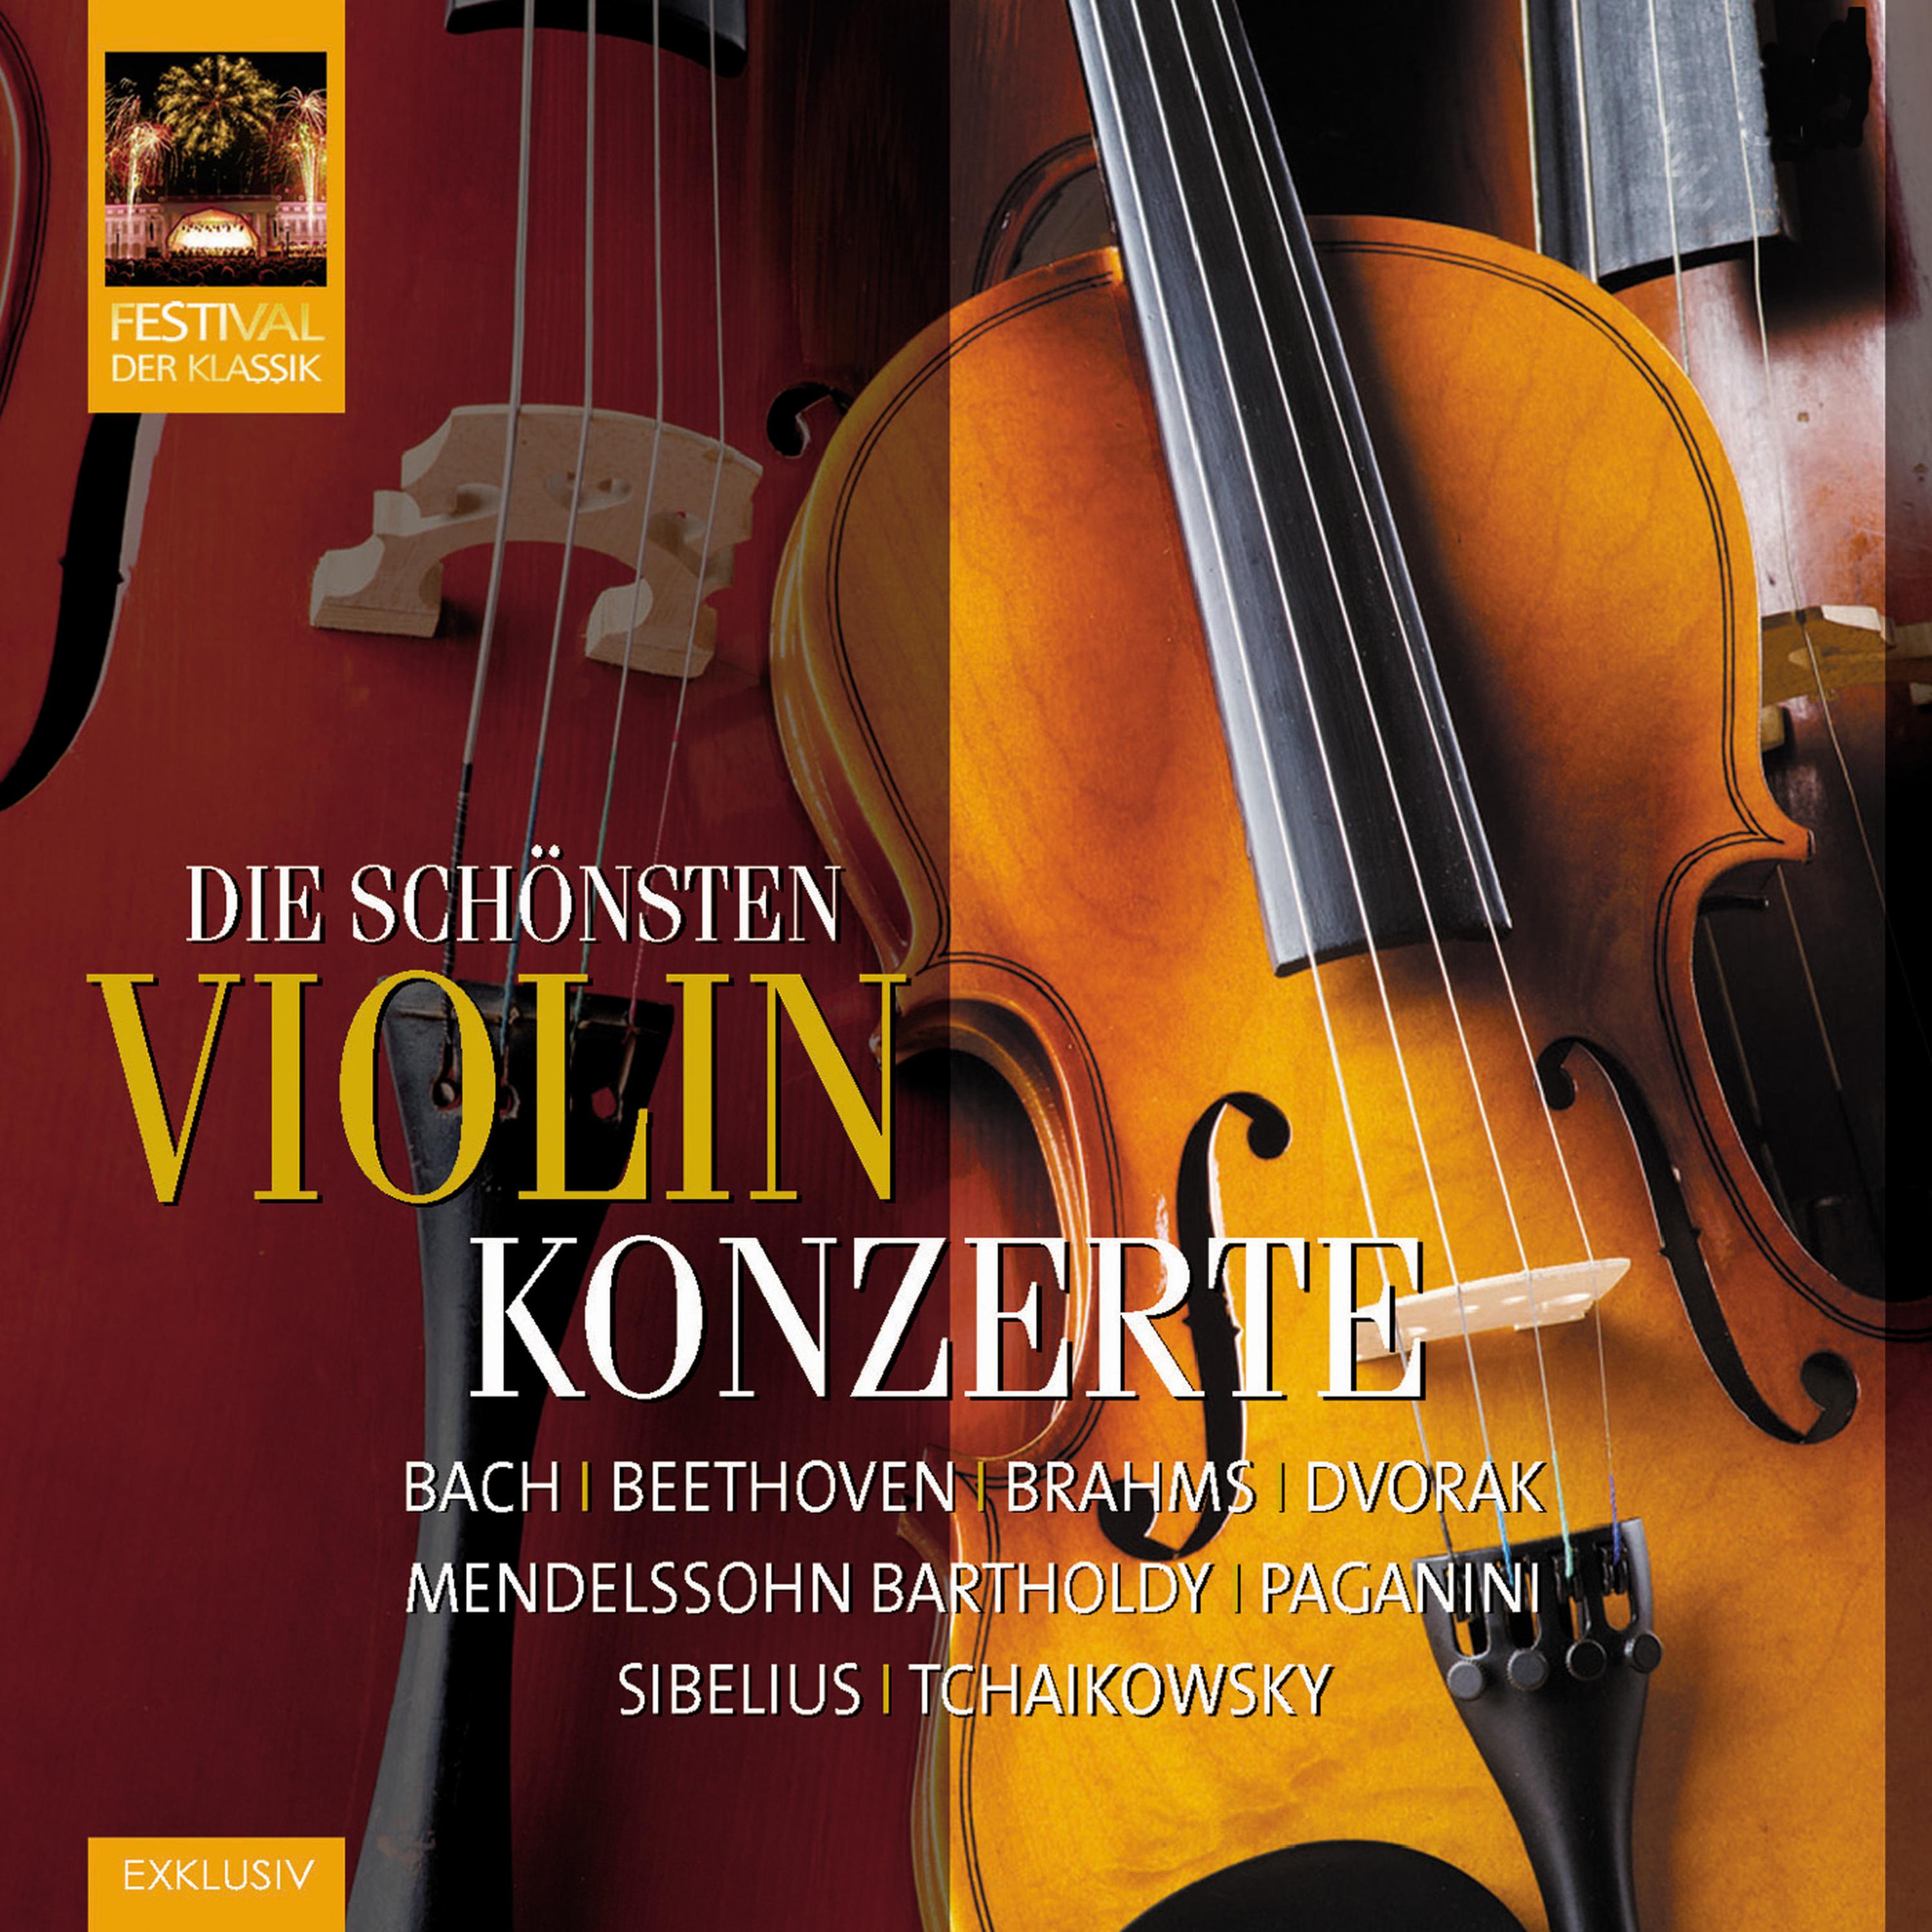 Violinkonzert in D Minor, Op. 47: I. Allegro moderato